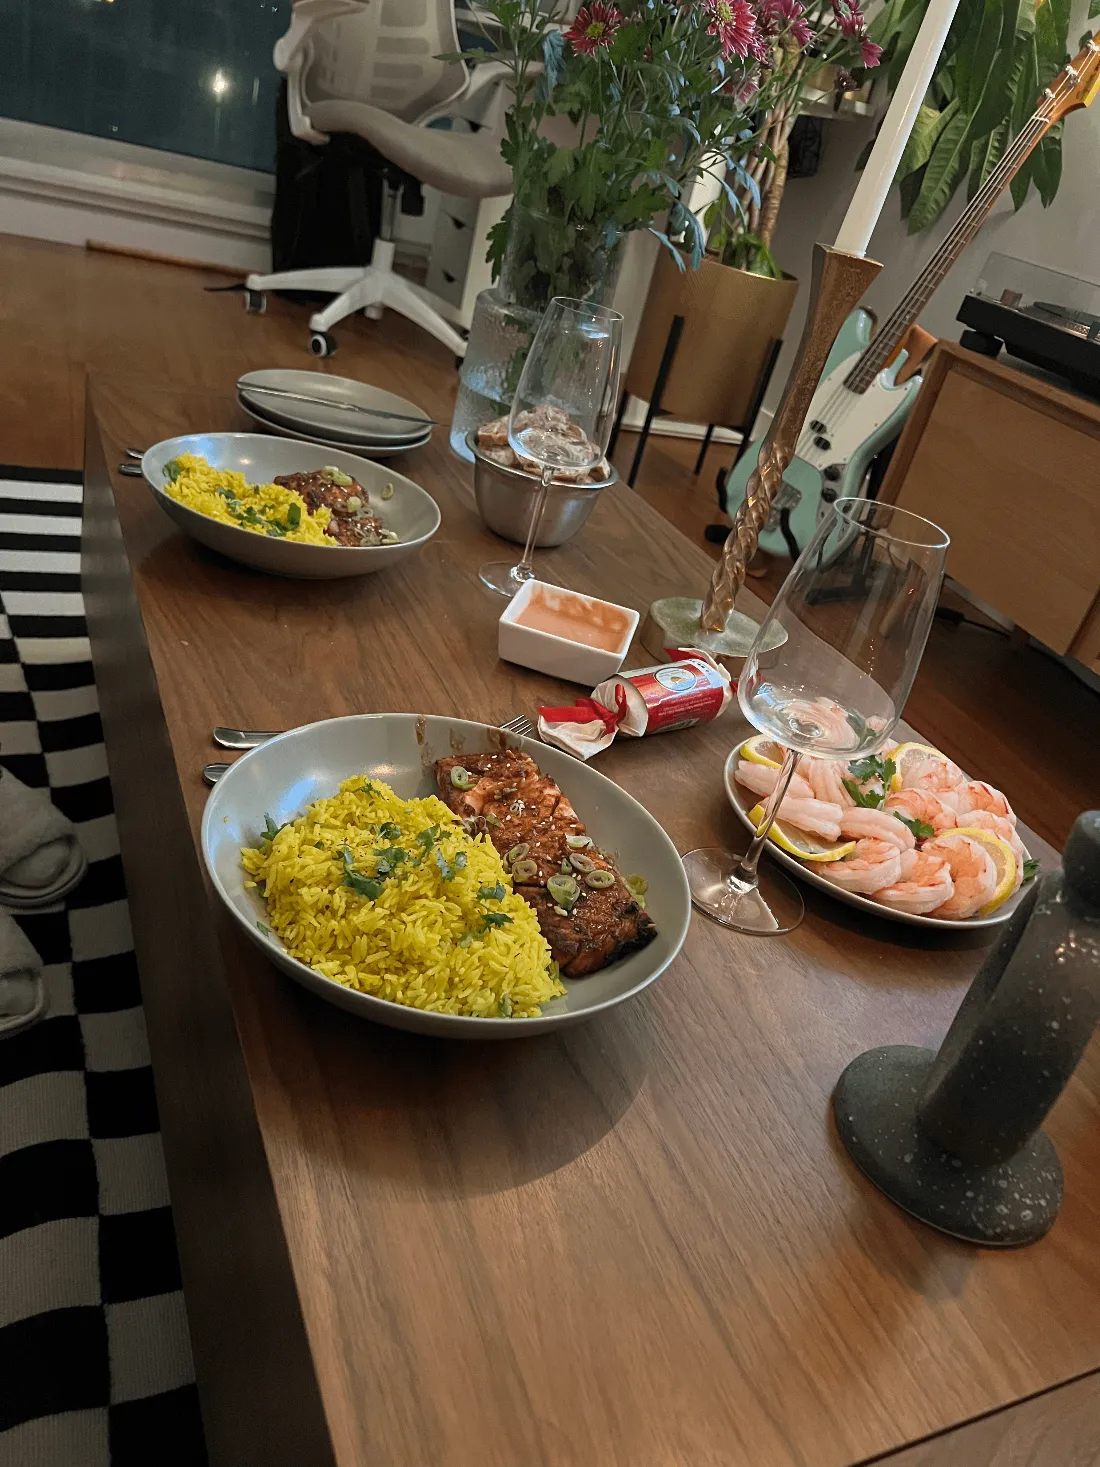 Repas de noel sur une table basse, riz, foie gras, saumon, crevettes